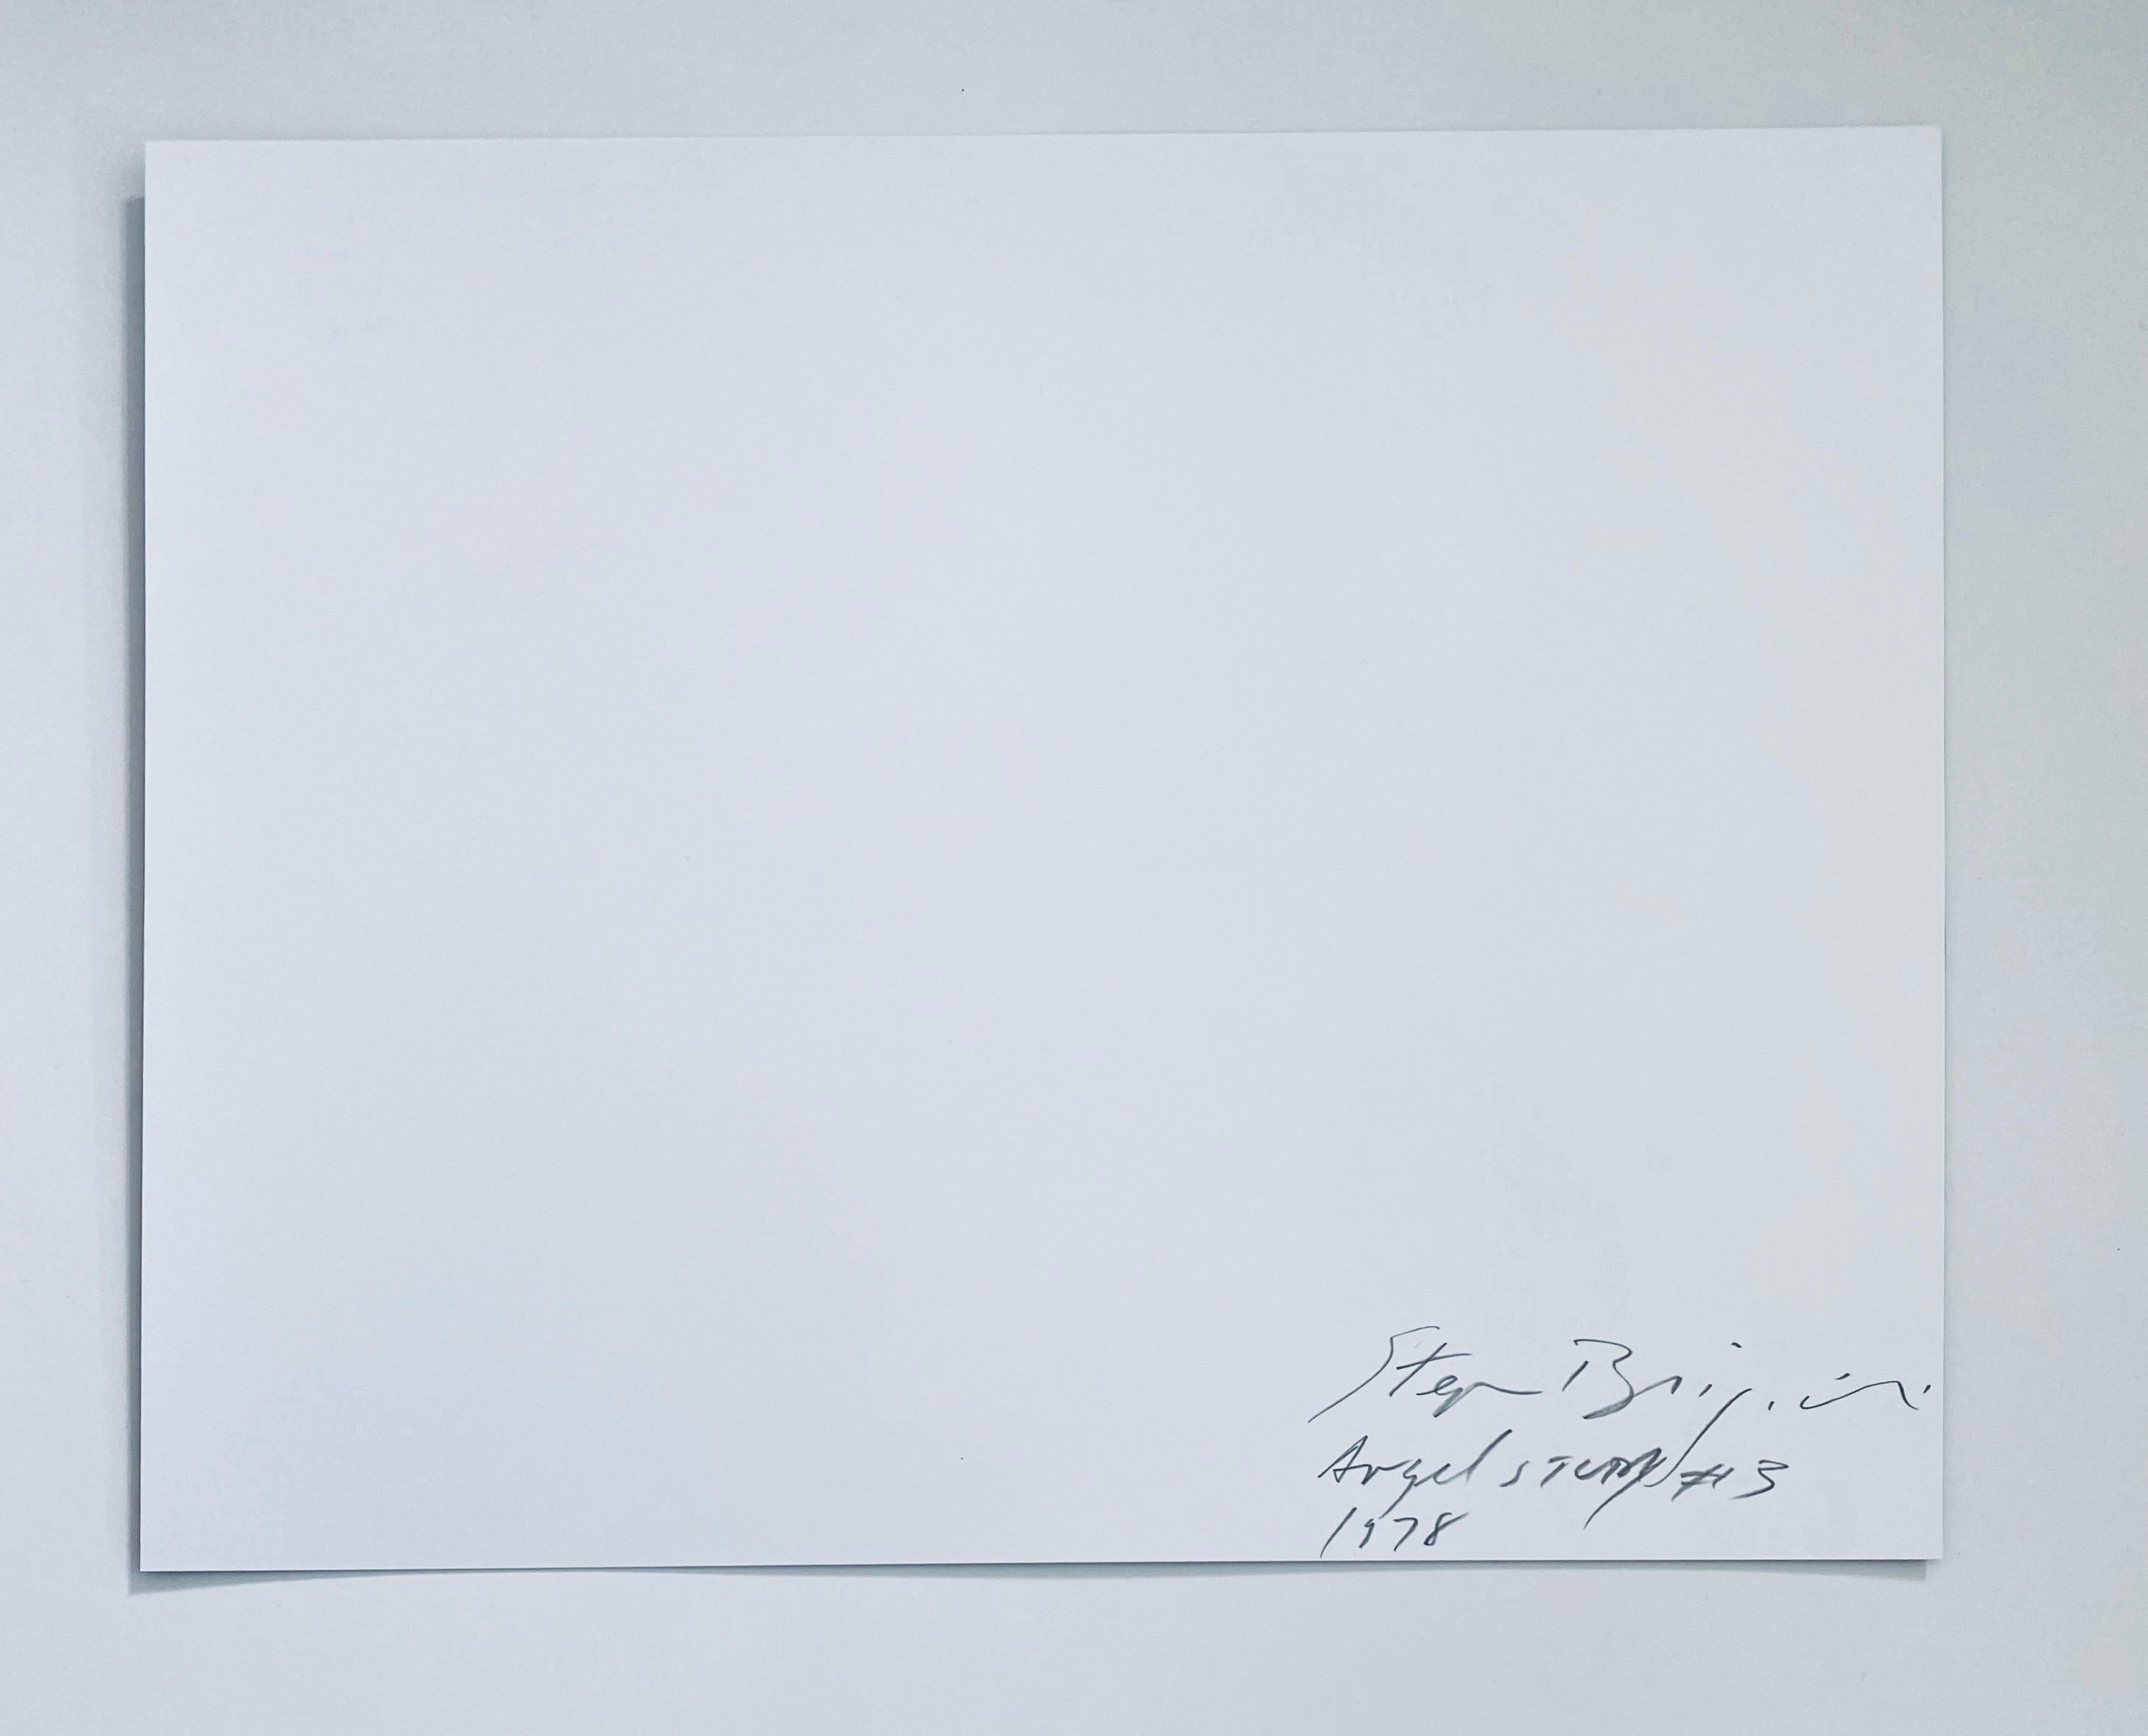 Verso handsigniert, betitelt und datiert.
Stephan Brigidi wurde 1951 in Providence, Rhode Island, geboren und ist ein weithin publizierter Künstler, dessen Werke in den Vereinigten Staaten und Europa ausgestellt wurden. Brigidi erhielt 1976 seinen